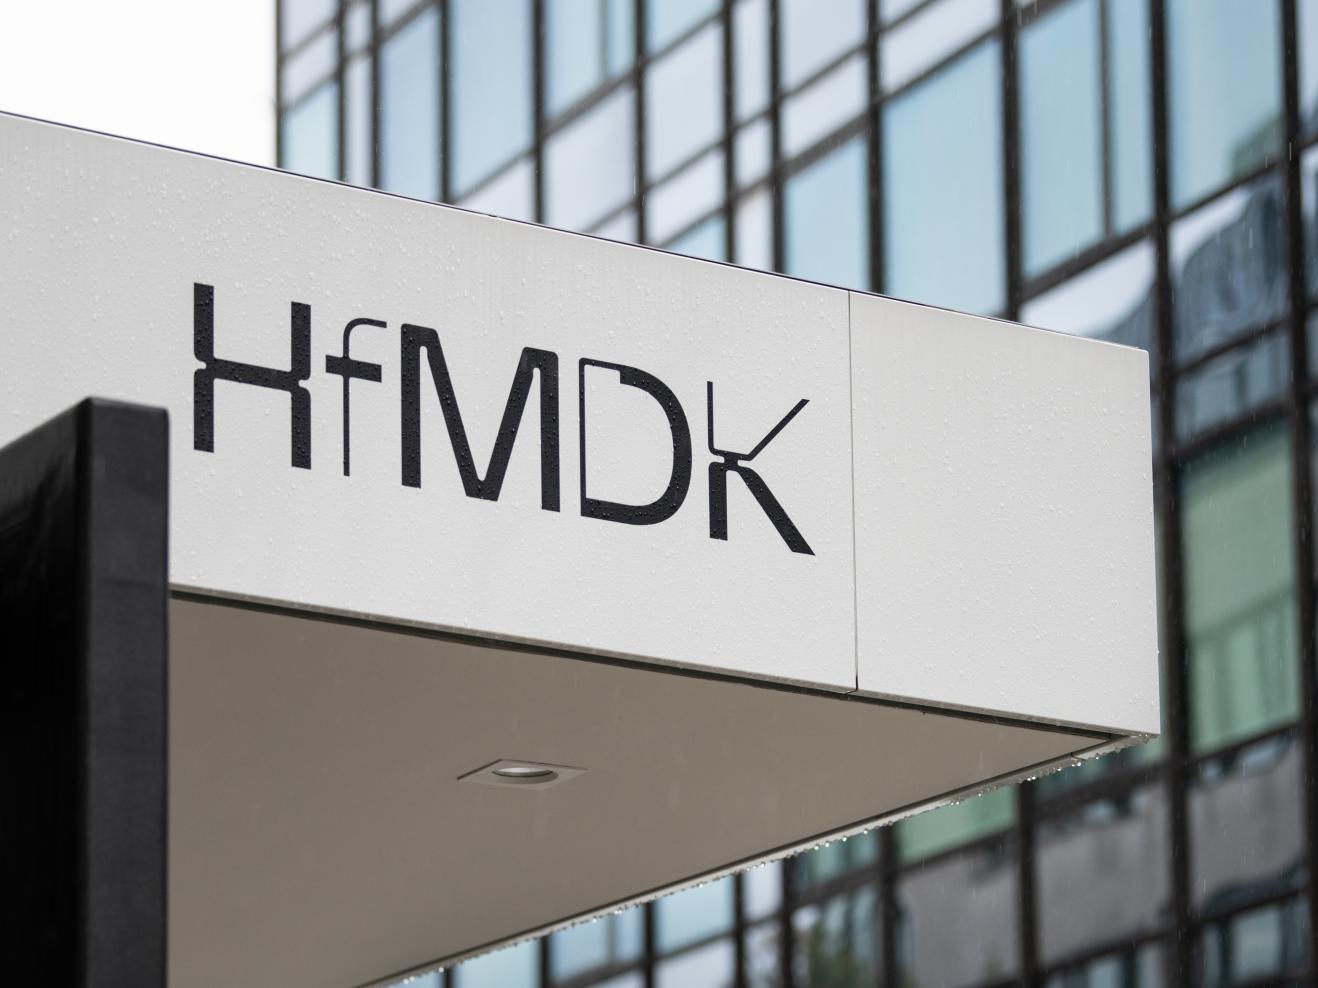 HfMDK-Schriftzug an einer Fassade im Regen.